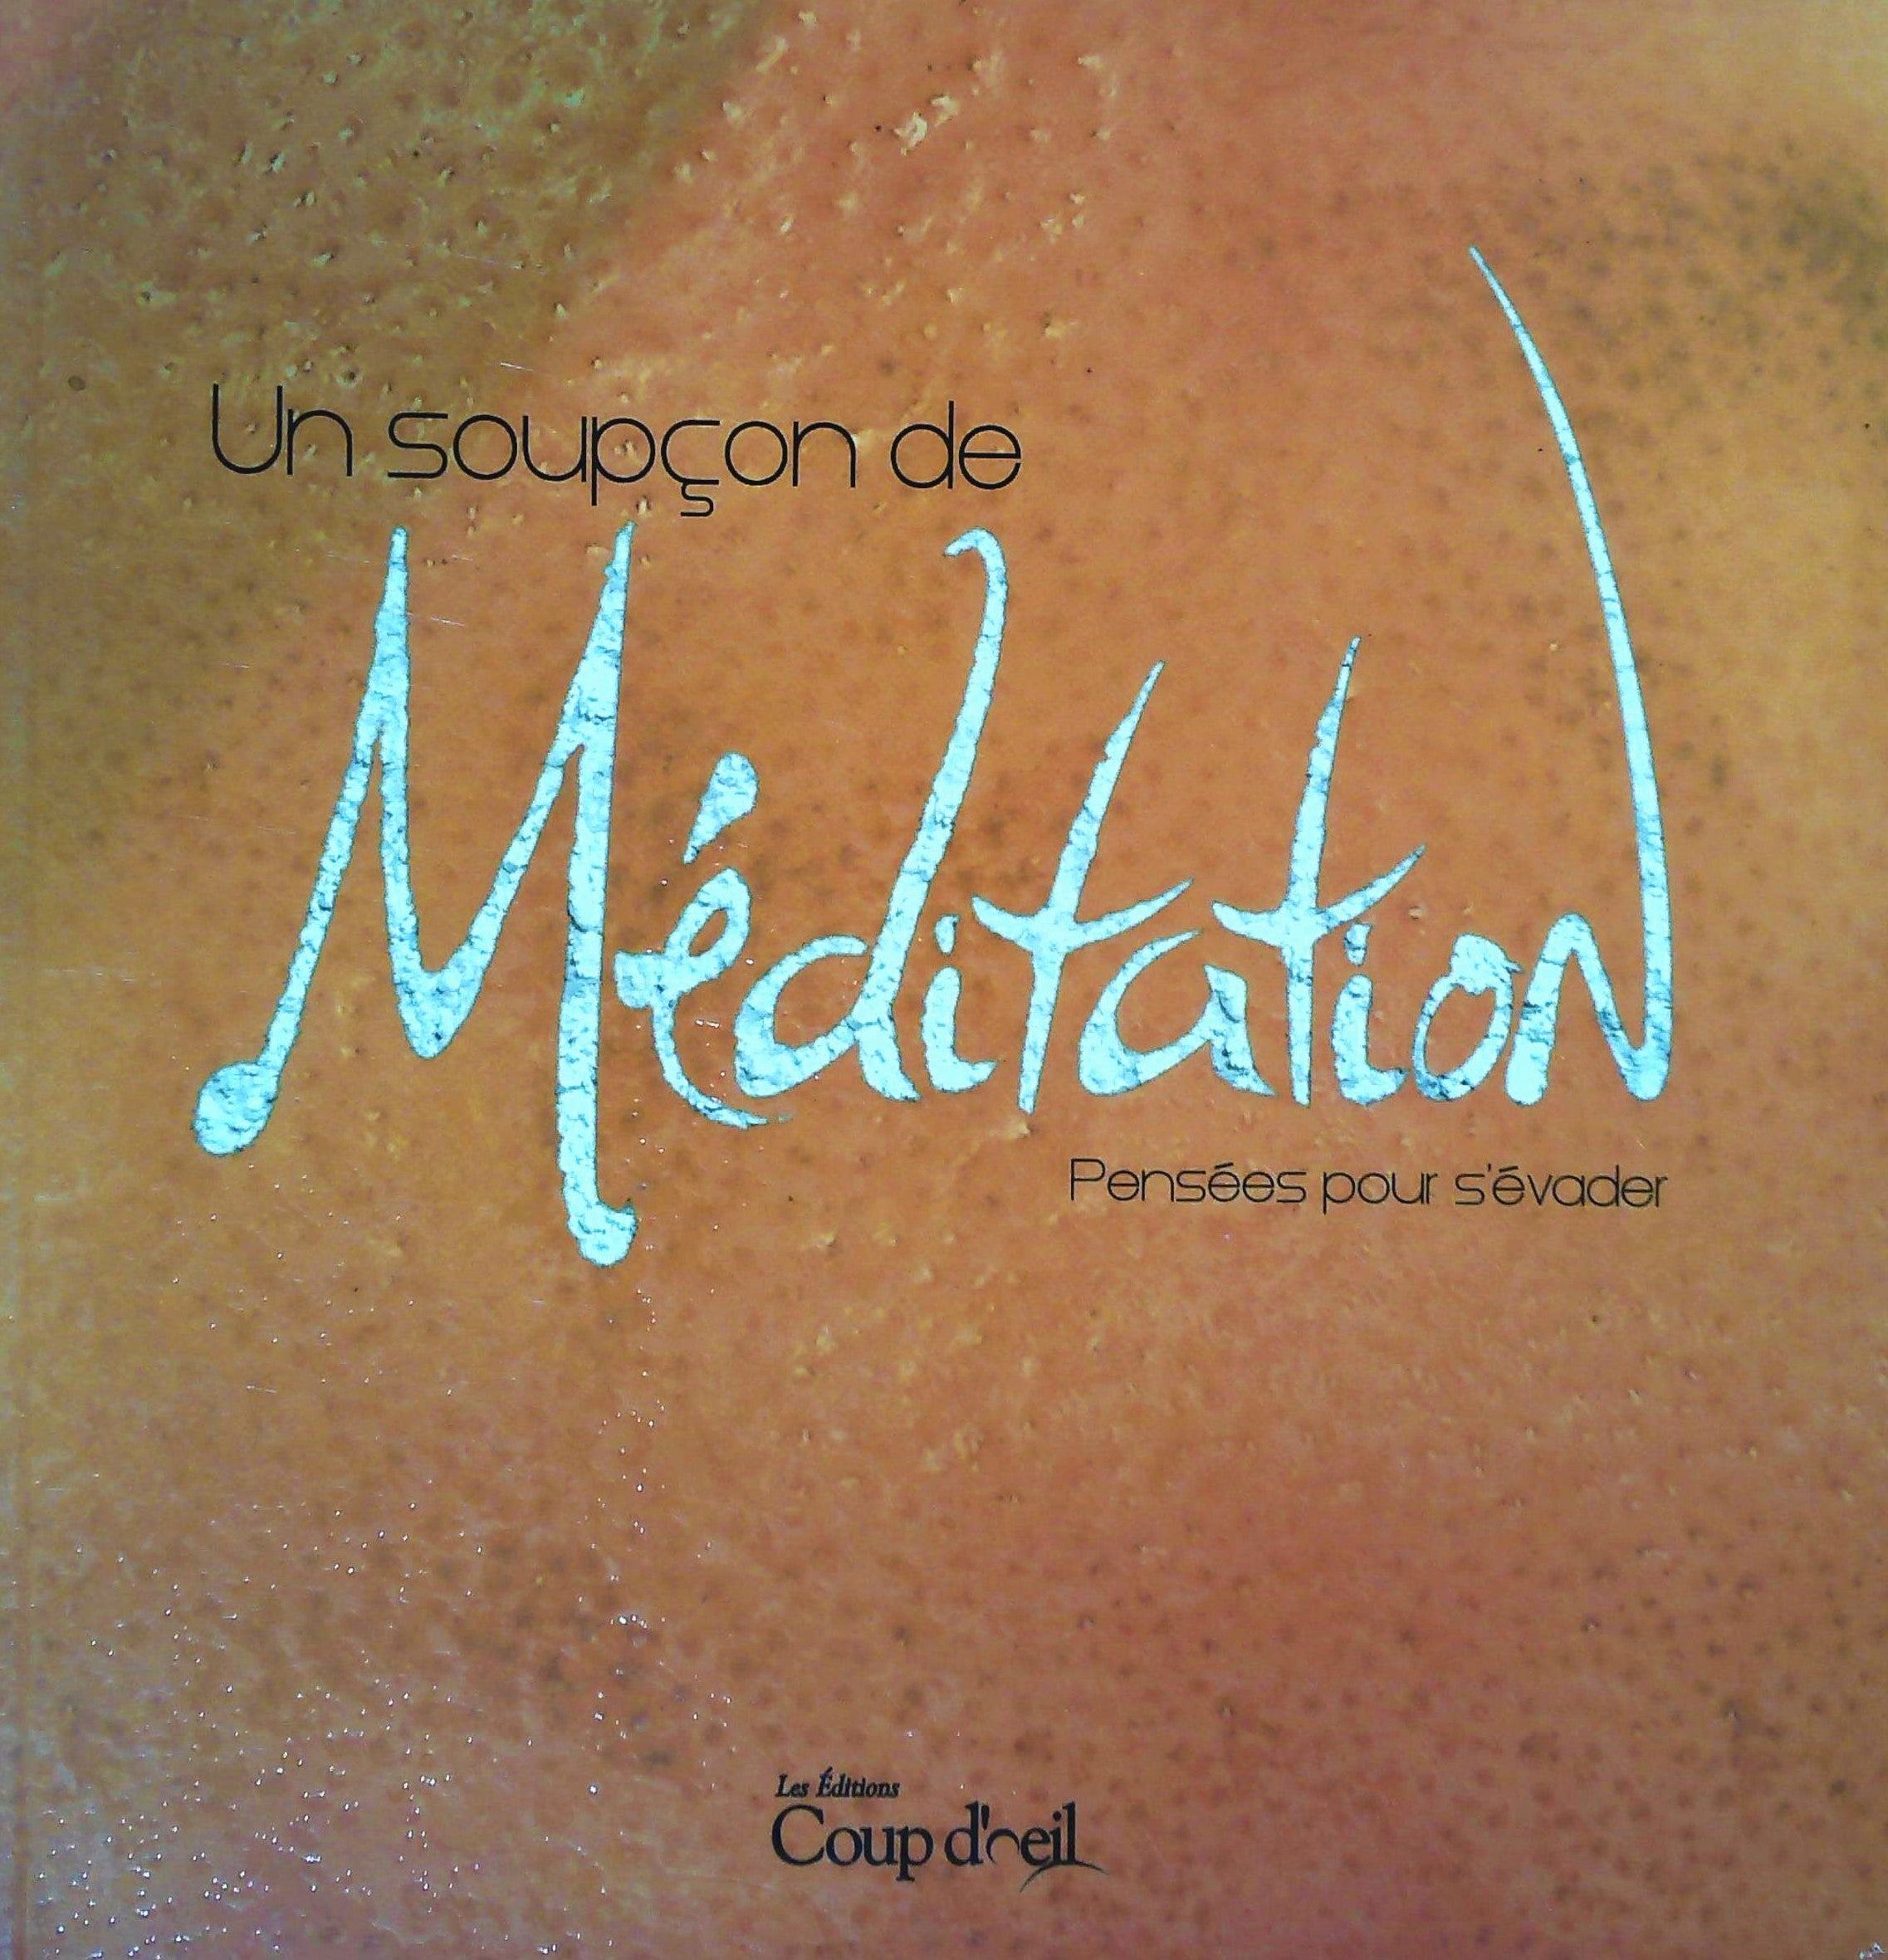 Livre ISBN 2896388303 Un soupçon de Méditation, pensées pour s'évader